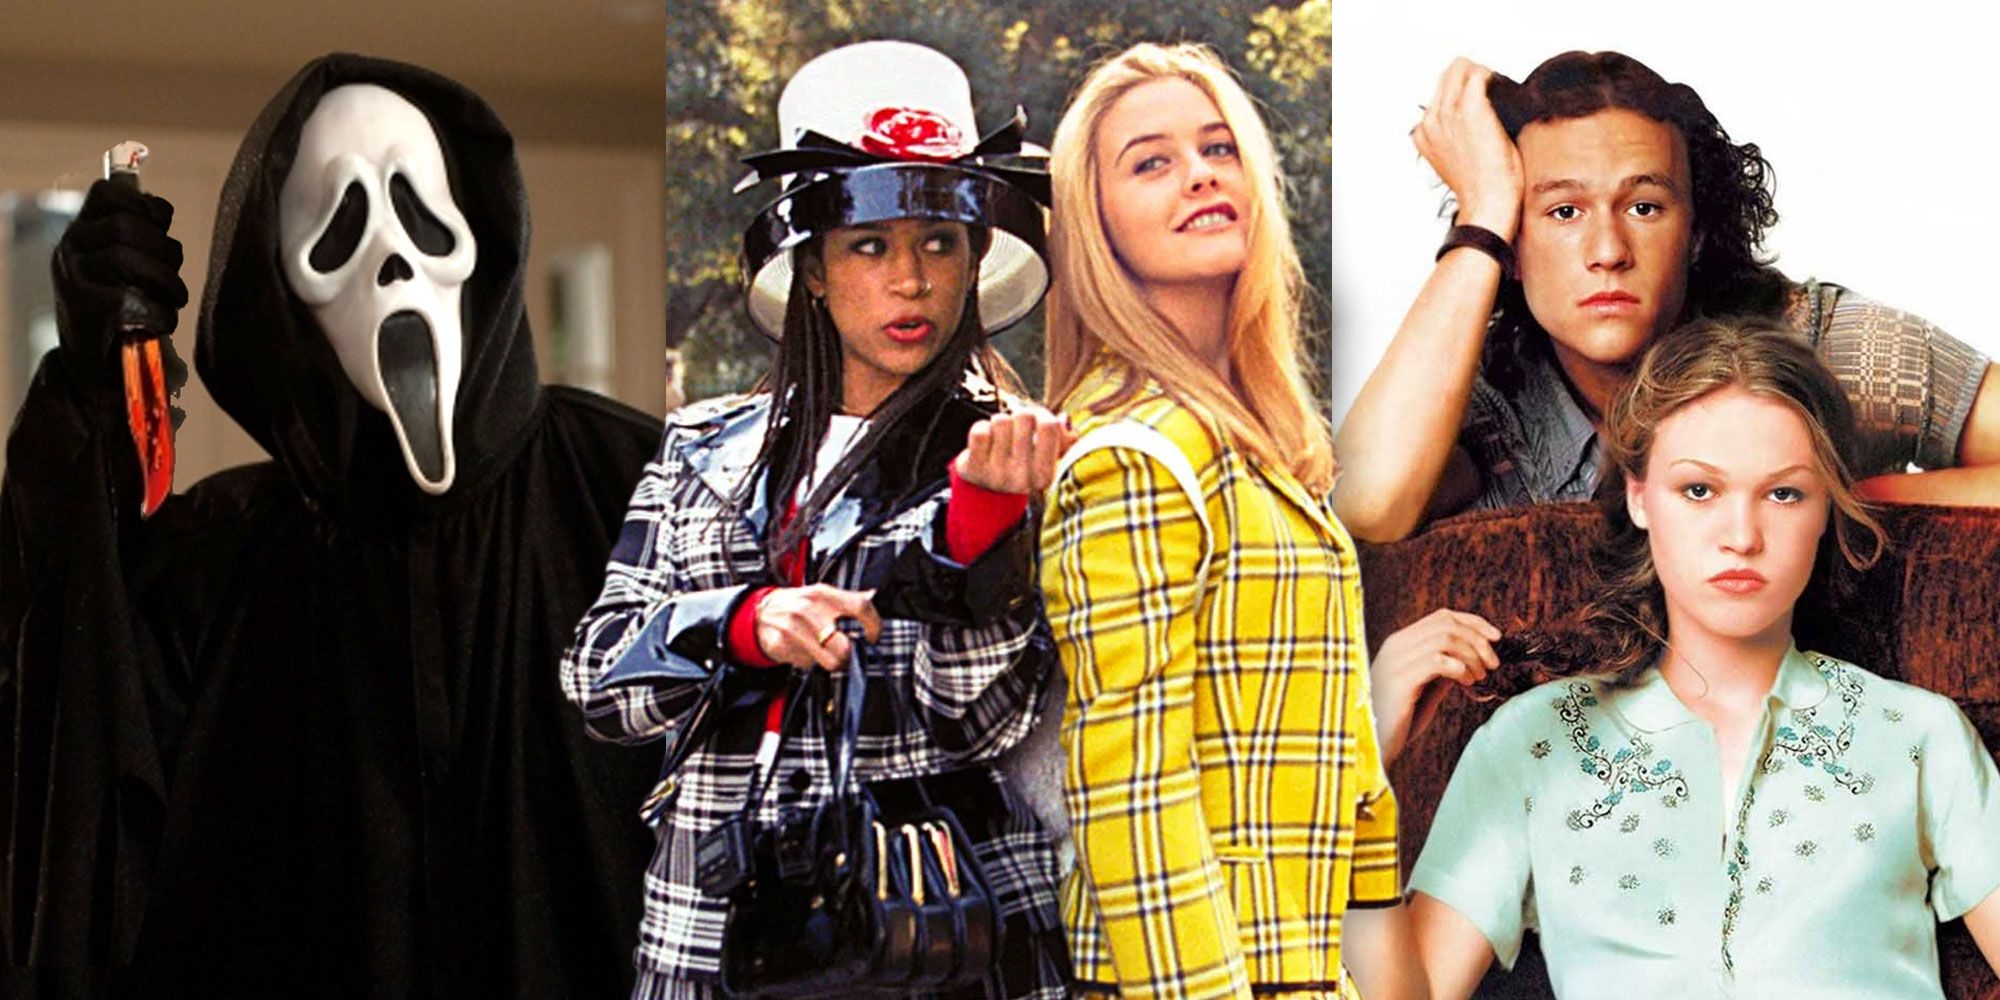 Las 16 mejores películas para adolescentes de los 90, según Rotten Tomatoes